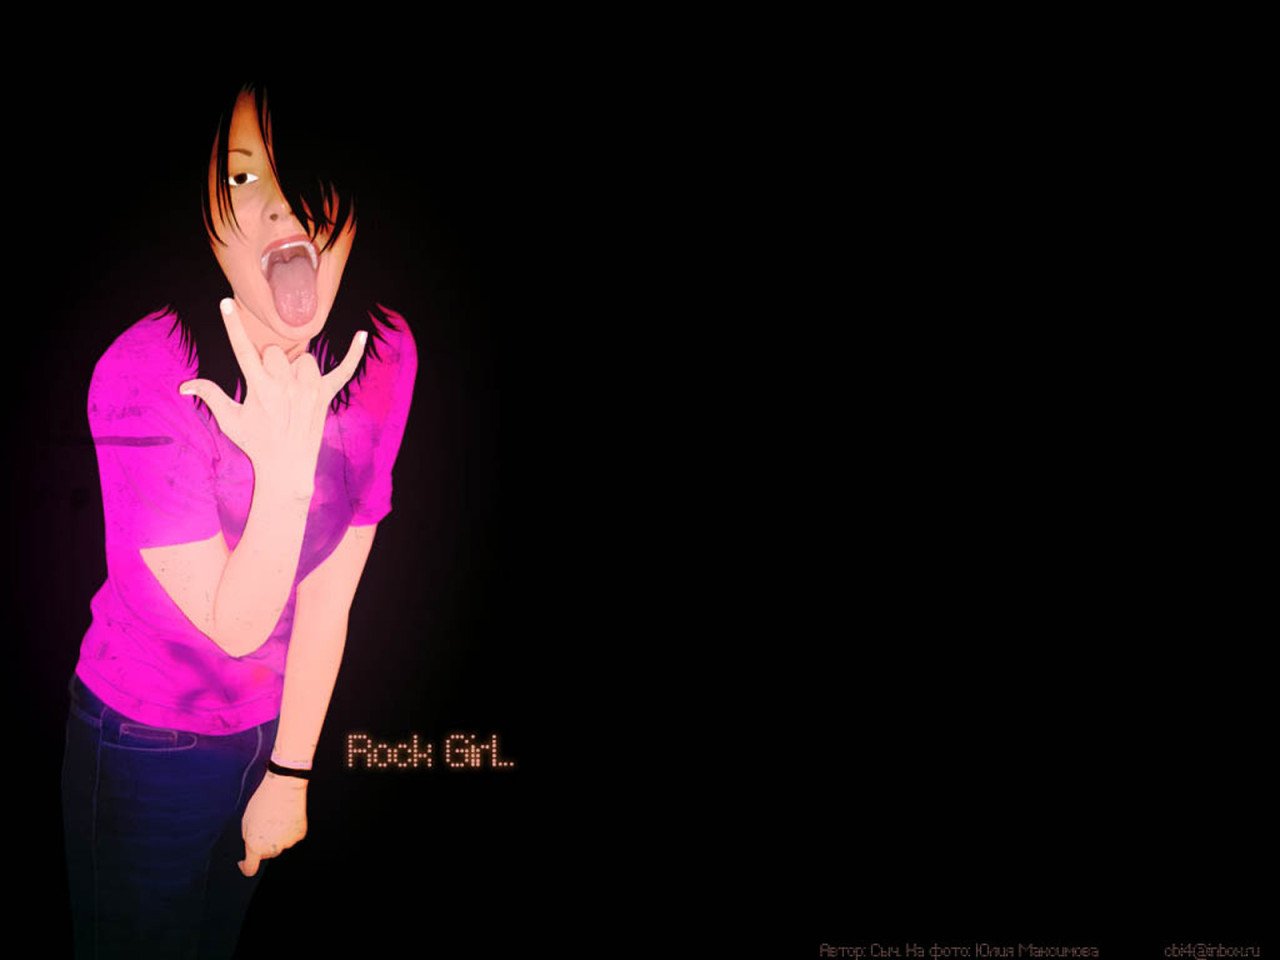 Emo rock girl Desktop wallpapers 1280x1024 1280x960